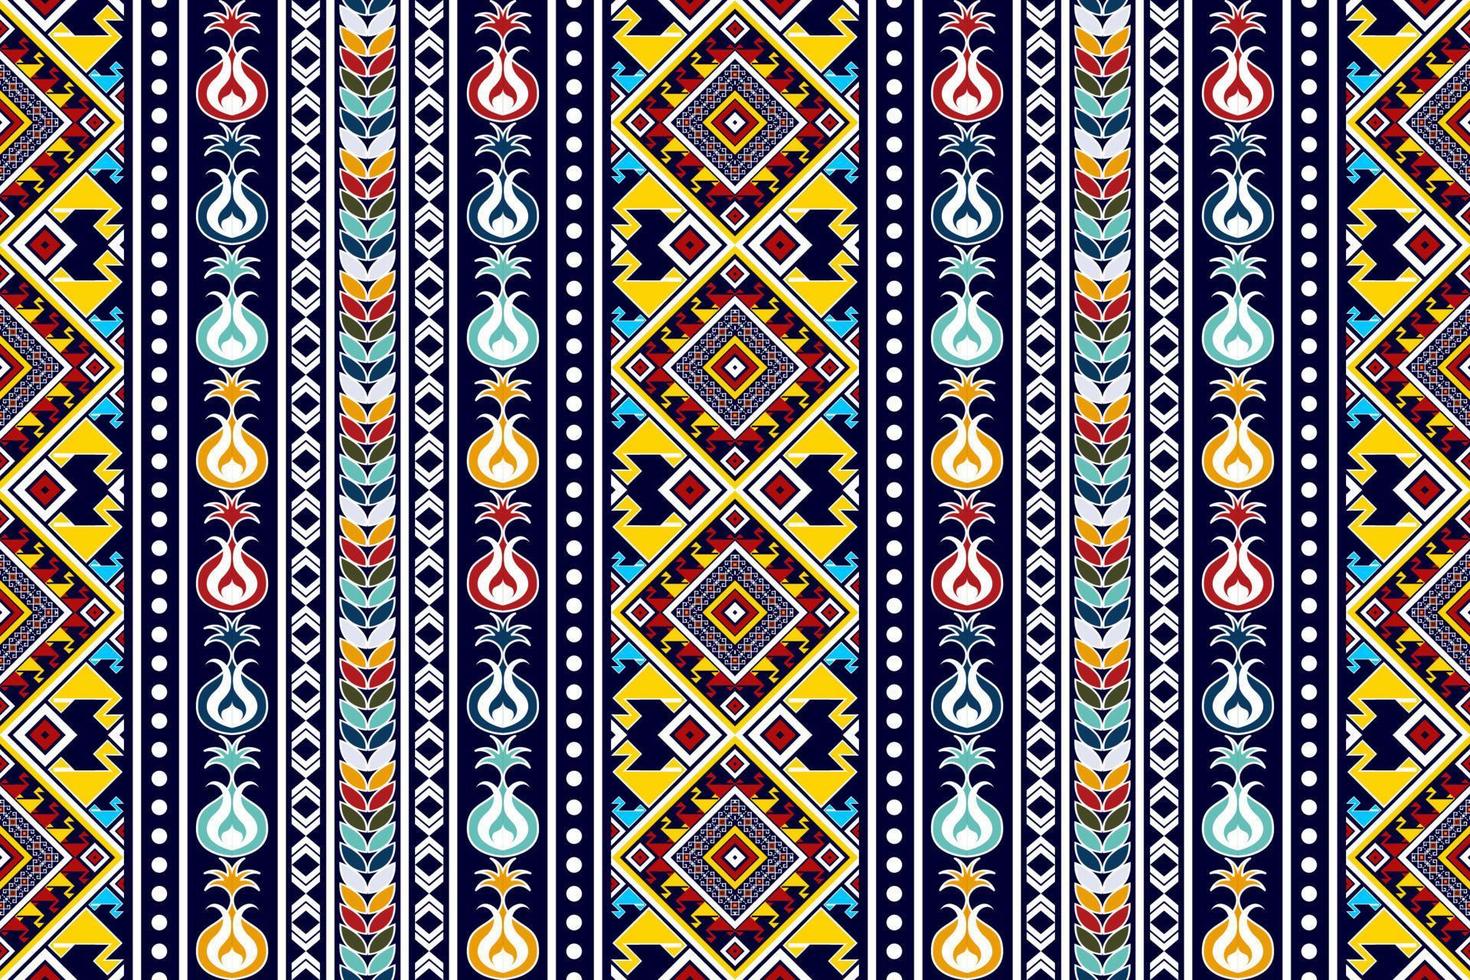 ikat etnisch naadloos textielpatroonontwerp. Azteekse stof tapijt mandala ornamenten textiel decoraties behang. tribal boho inheemse Turkije traditionele borduurwerk vector achtergrond.